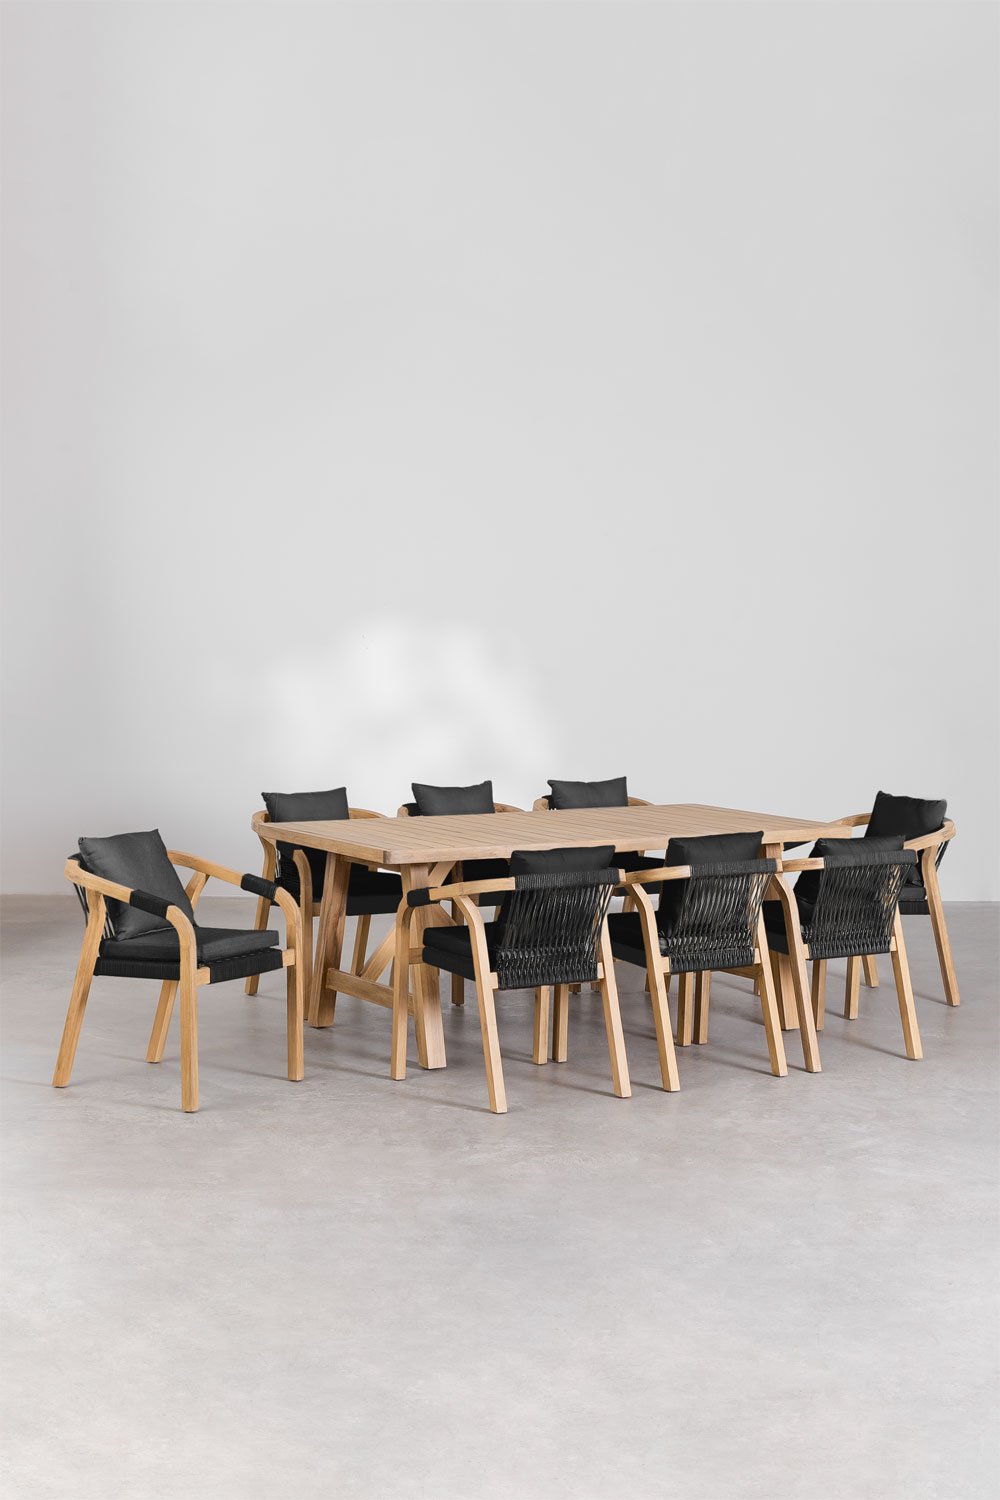 Set di Tavolo Rettangolare (200x100 cm) e 8 Sedie da Pranzo in Legno di Acacia Dubai, immagine della galleria 1